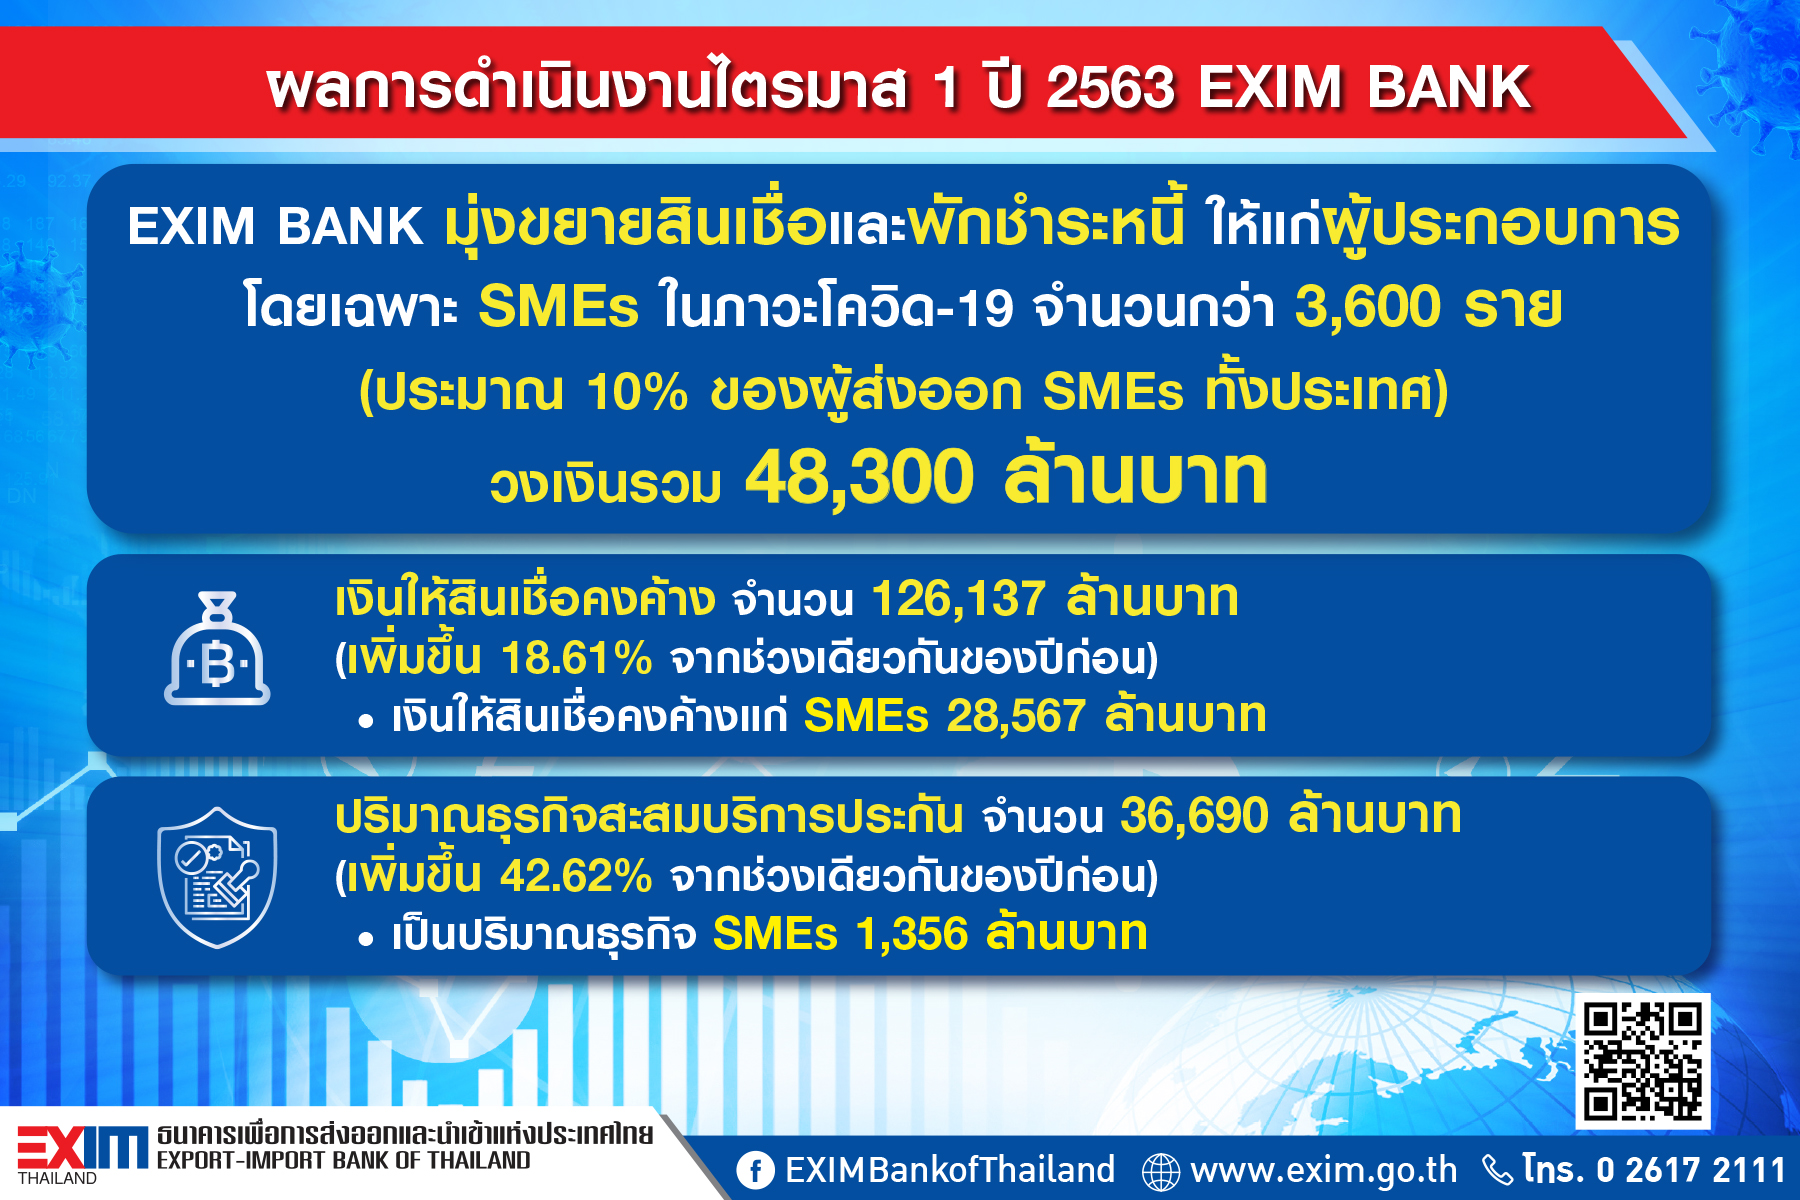 EXIM BANK เผยผลการดำเนินงานไตรมาส 1 ปี 2563 มุ่งขยายสินเชื่อและพักชำระหนี้ให้แก่ผู้ประกอบการ โดยเฉพาะ SMEs ในภาวะโควิด-19